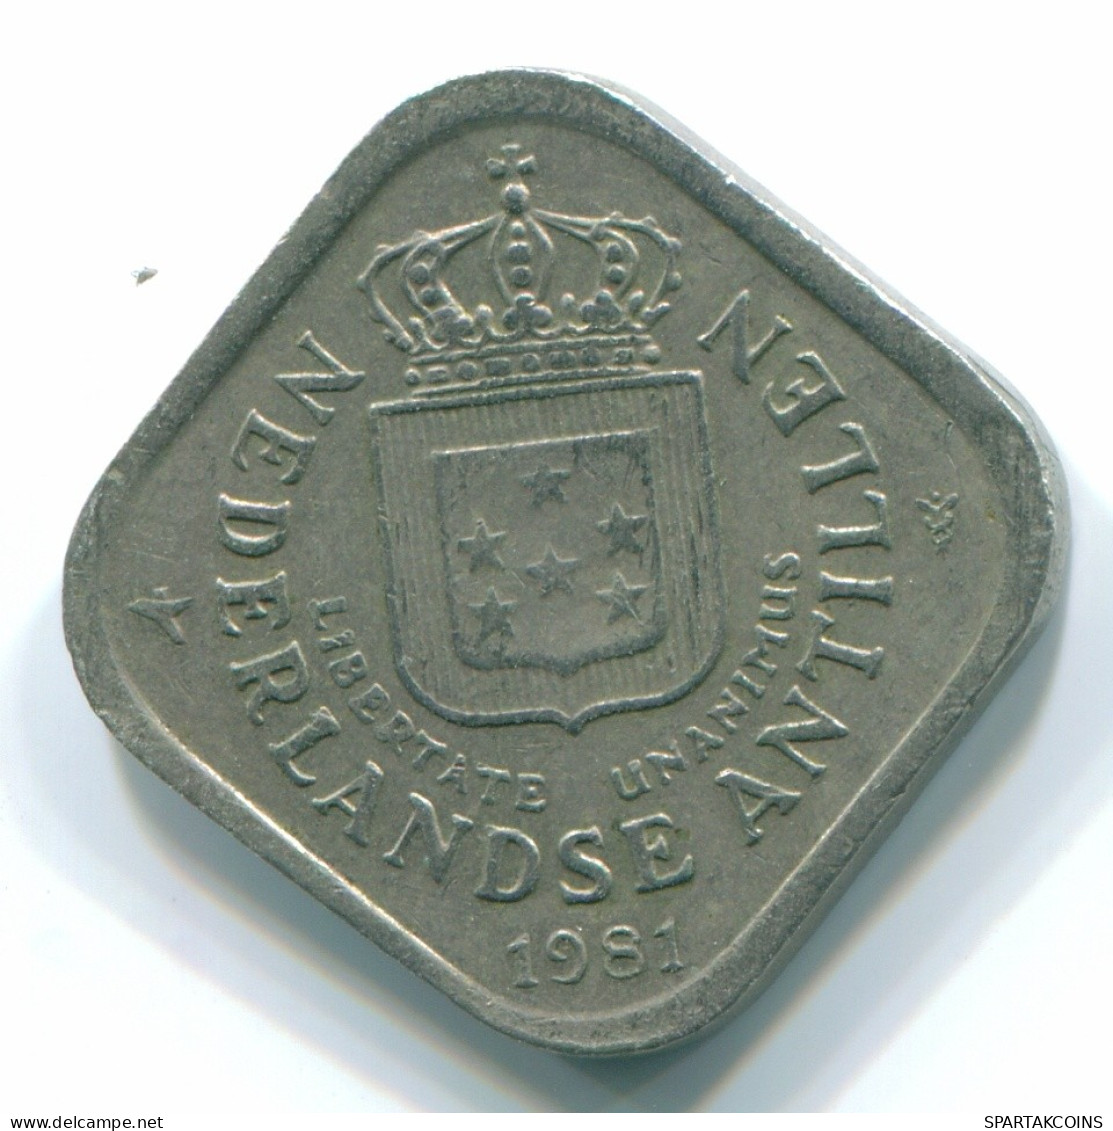 5 CENTS 1981 NETHERLANDS ANTILLES Nickel Colonial Coin #S12341.U.A - Niederländische Antillen